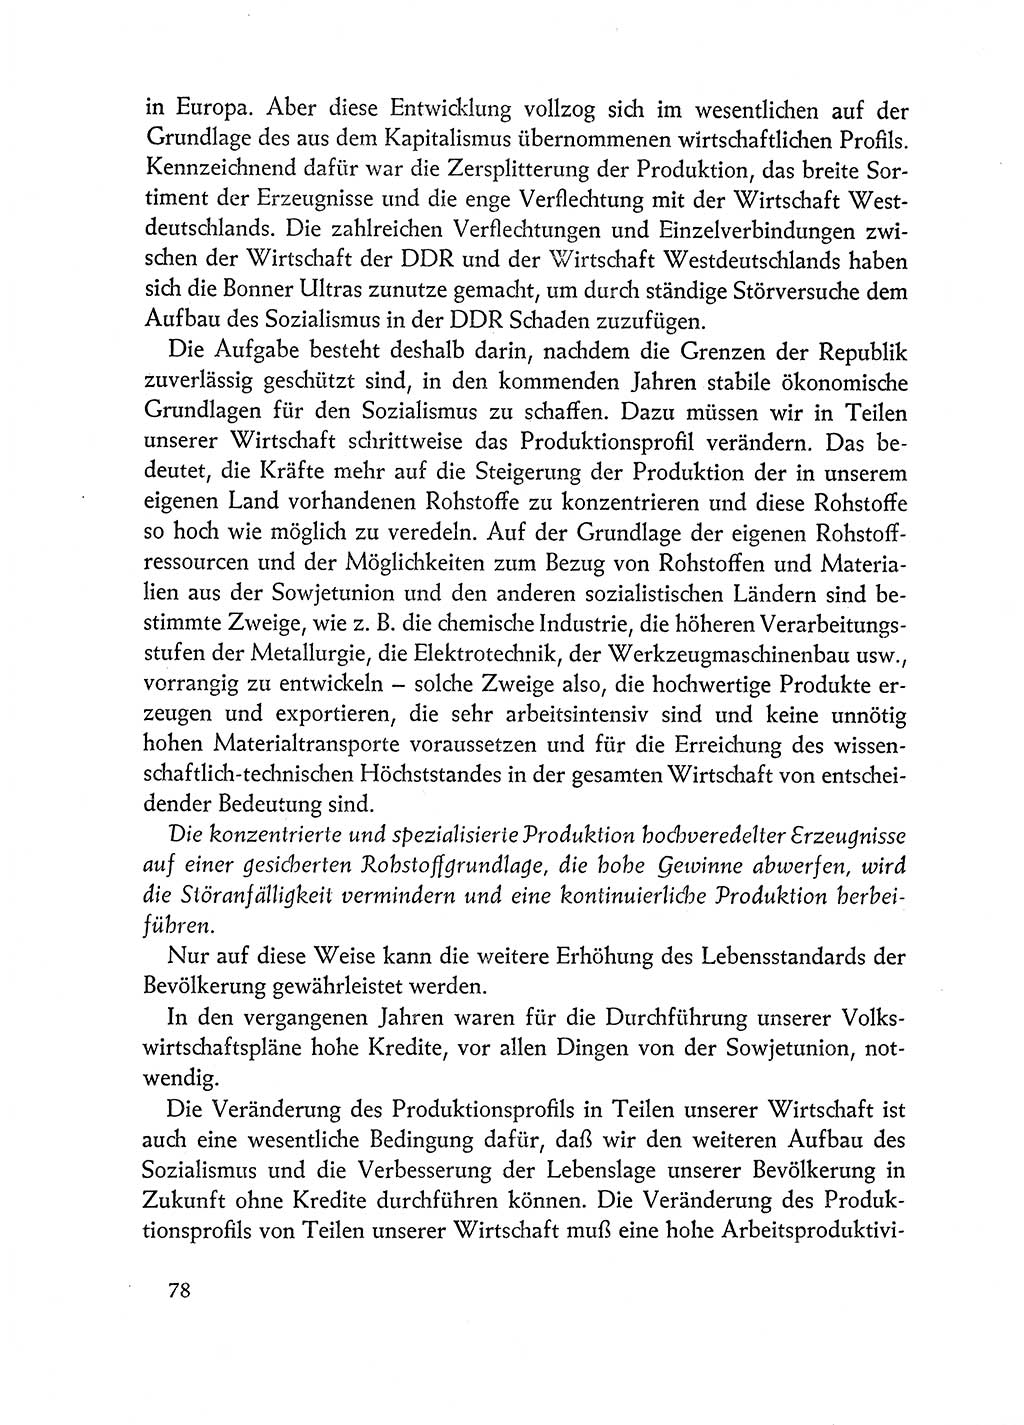 Dokumente der Sozialistischen Einheitspartei Deutschlands (SED) [Deutsche Demokratische Republik (DDR)] 1962-1963, Seite 78 (Dok. SED DDR 1962-1963, S. 78)